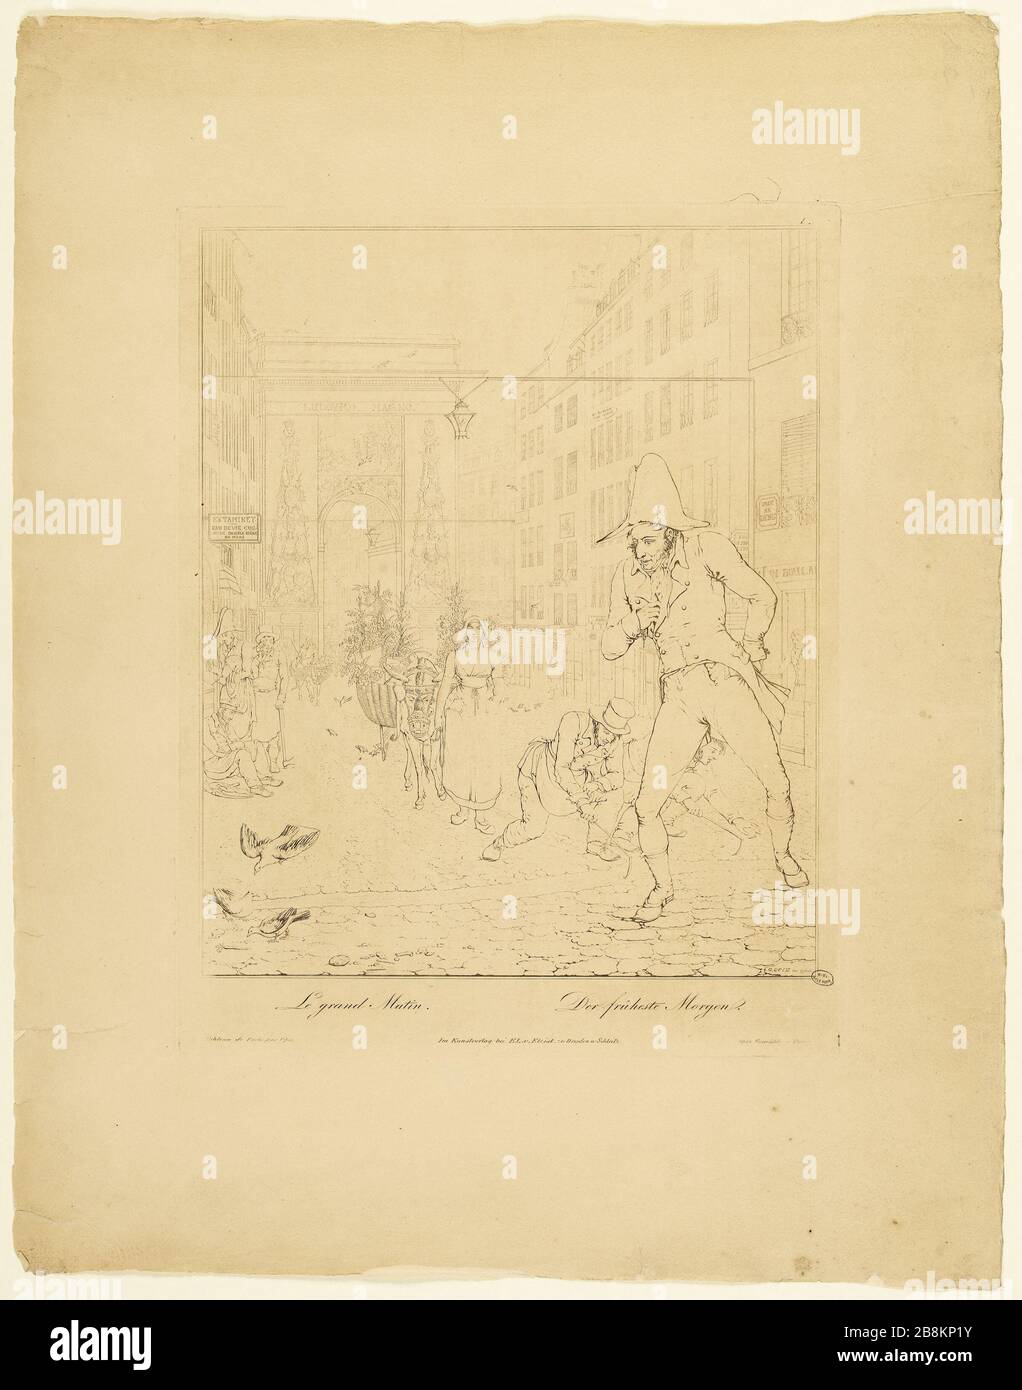 Grand Morning Georg Emanuel Opitz dit Opiz (1775-1841). 'Le Grand Matin'. Parigi (Xème arr.). Gravure (eau-forte au trait noir et blanc). 1813. Parigi, musée Carnavalet. Foto Stock